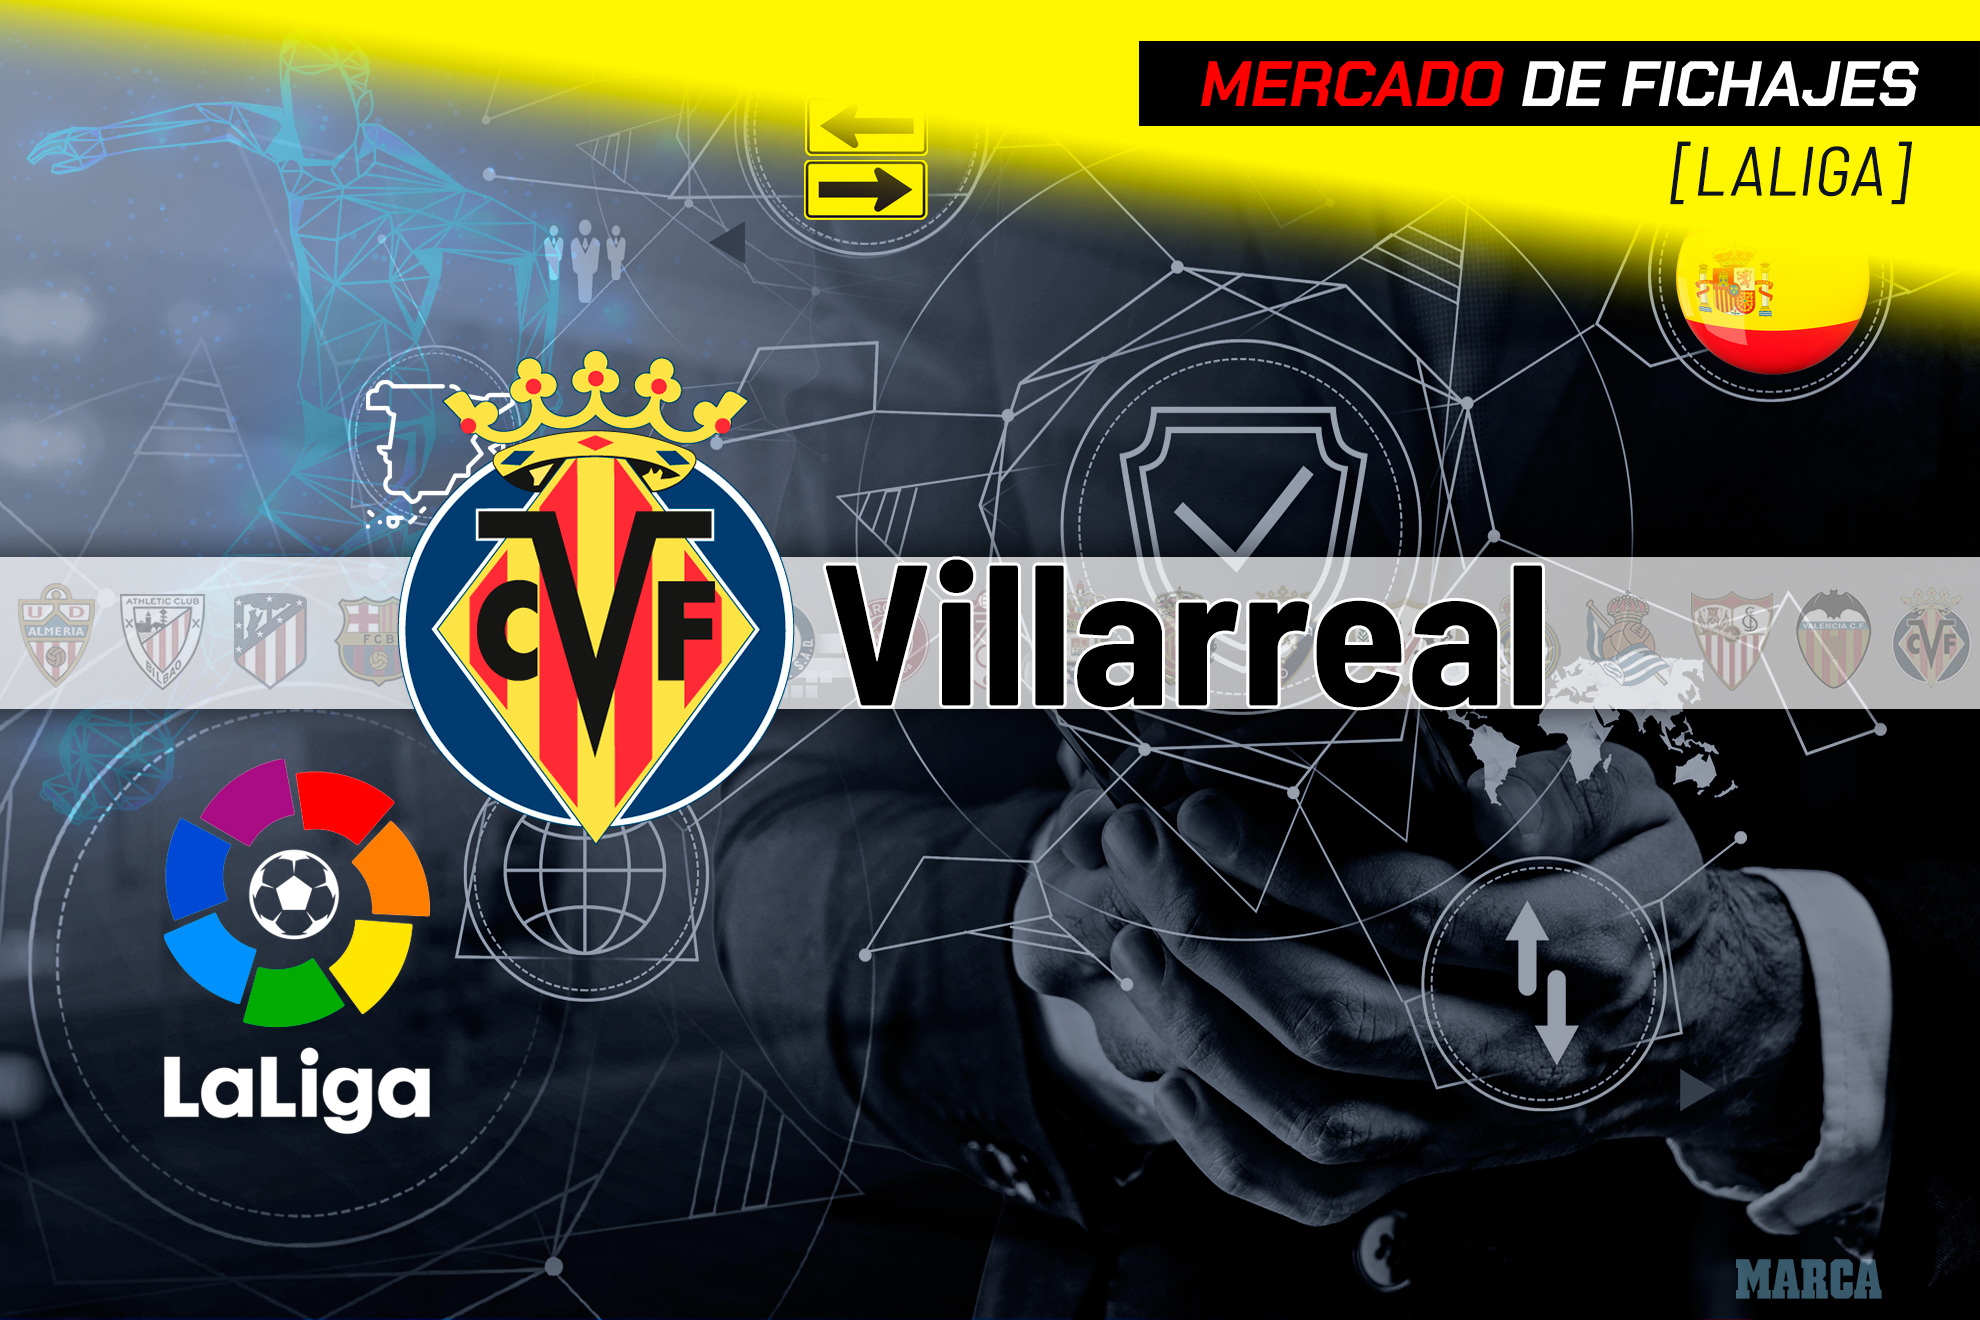 El Villarreal terminó quinto, a siete puntos de la Champions. MARCANIT